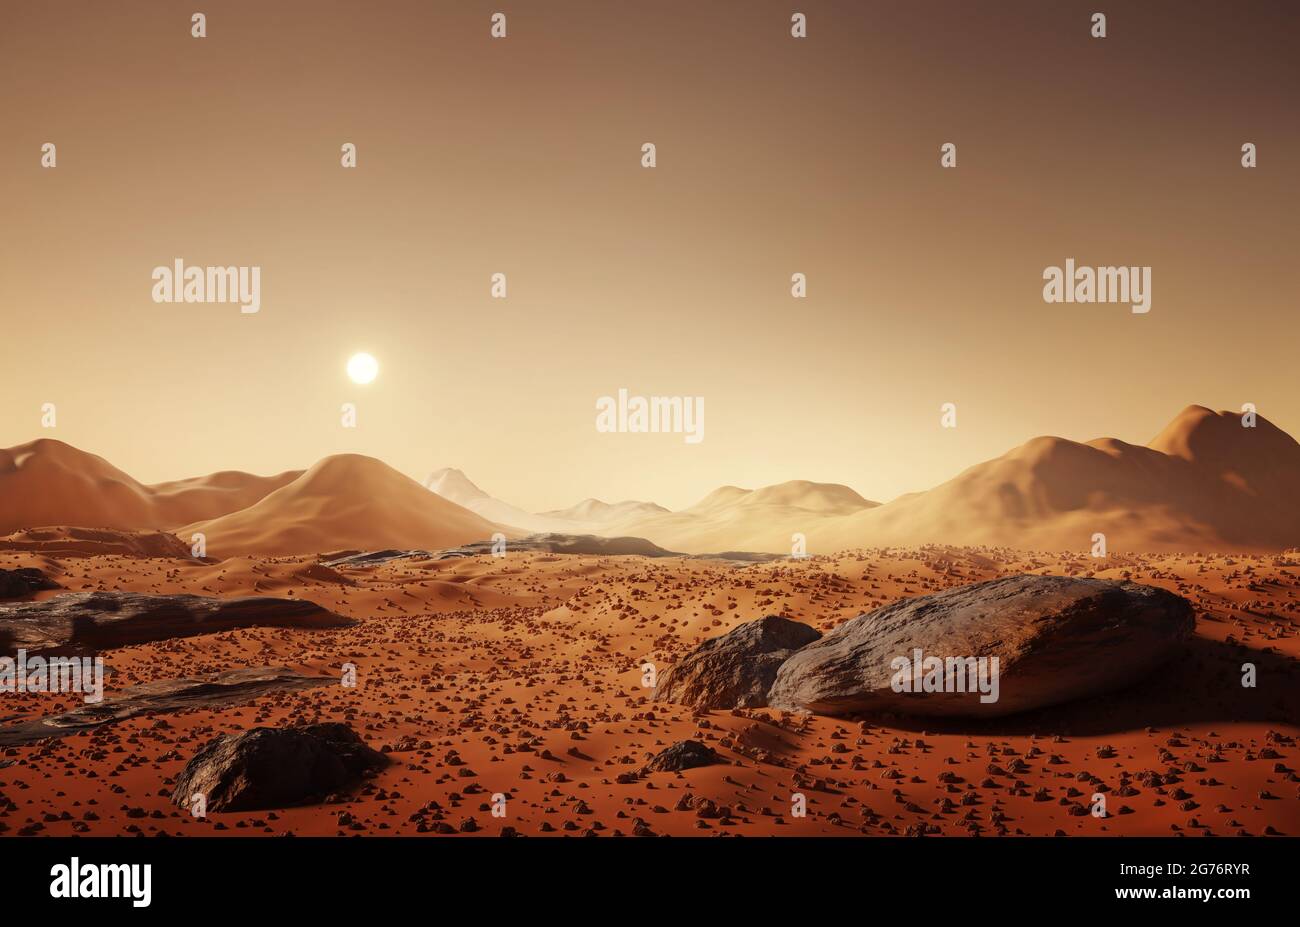 Die marsoberfläche, verstreute Felsen und ferne Berge auf der Marsoberfläche. 3D-Illustration. Stockfoto